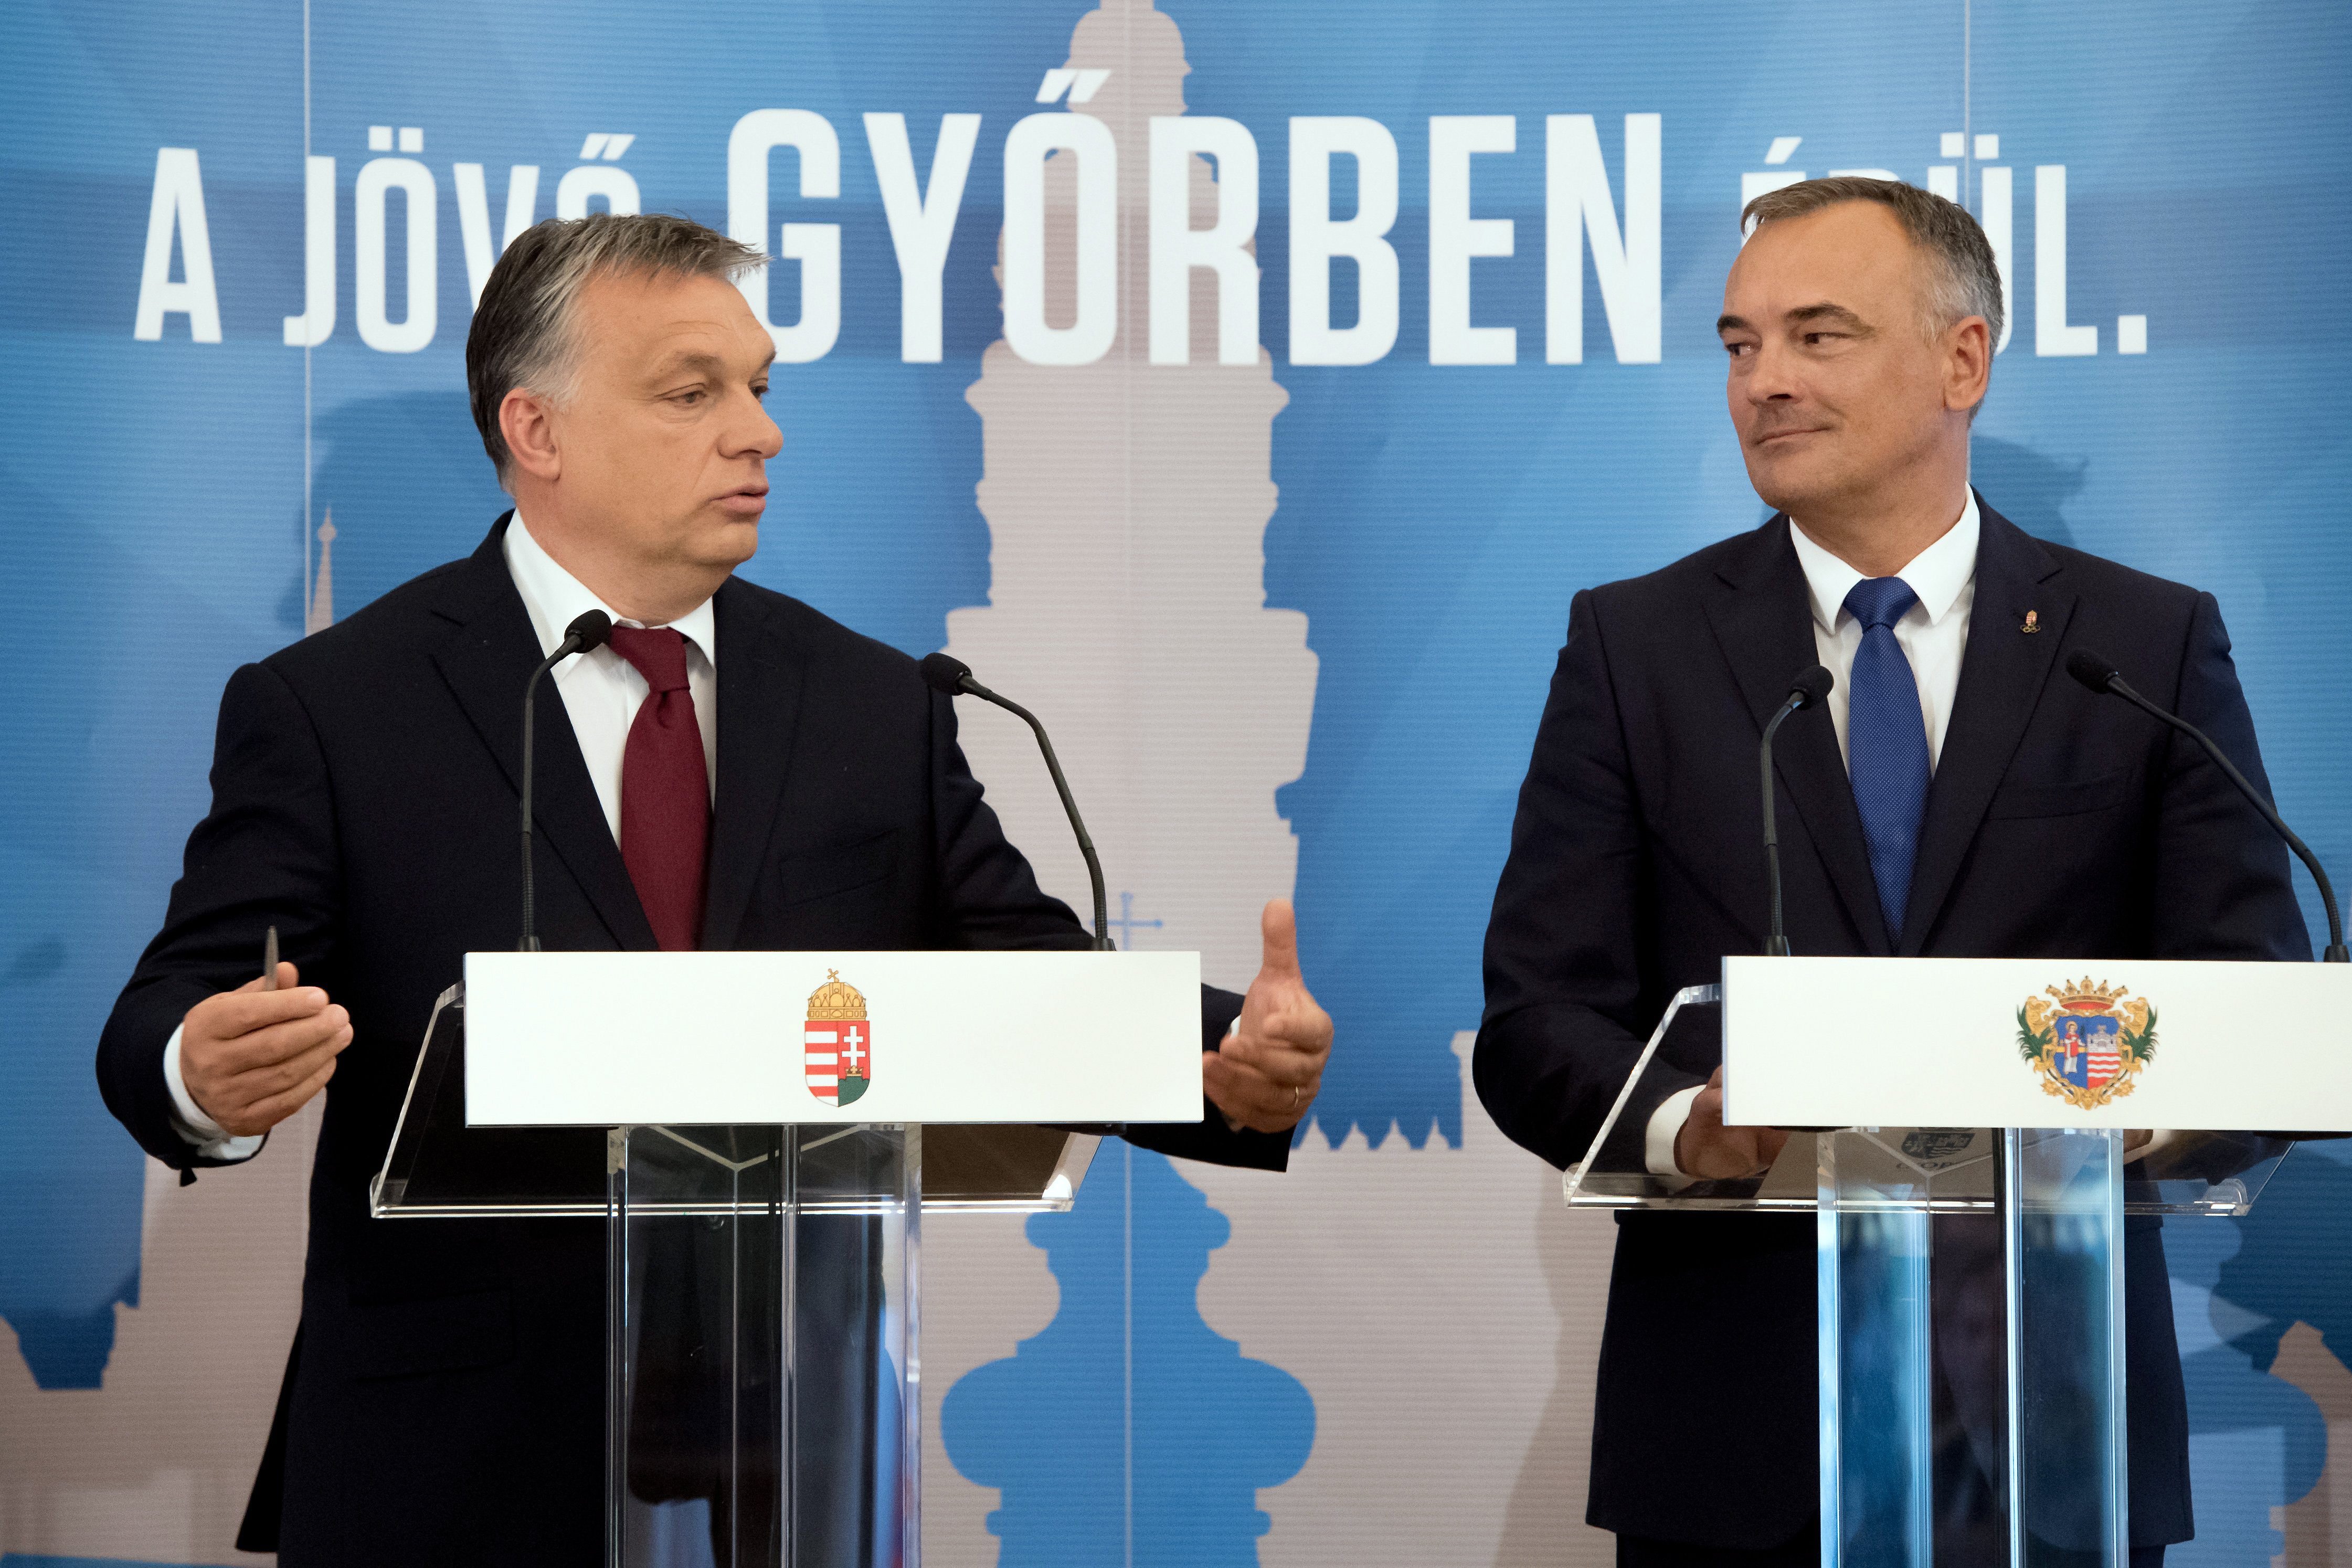 Orbán Viktor miniszterelnök és Borkai Zsolt  polgármester sajtótájékoztatót tart, miután aláírták a Modern városok program keretében a kormány és Győr városa közötti együttműködési megállapodást a győri városháza dísztermében 2017. április 28-án